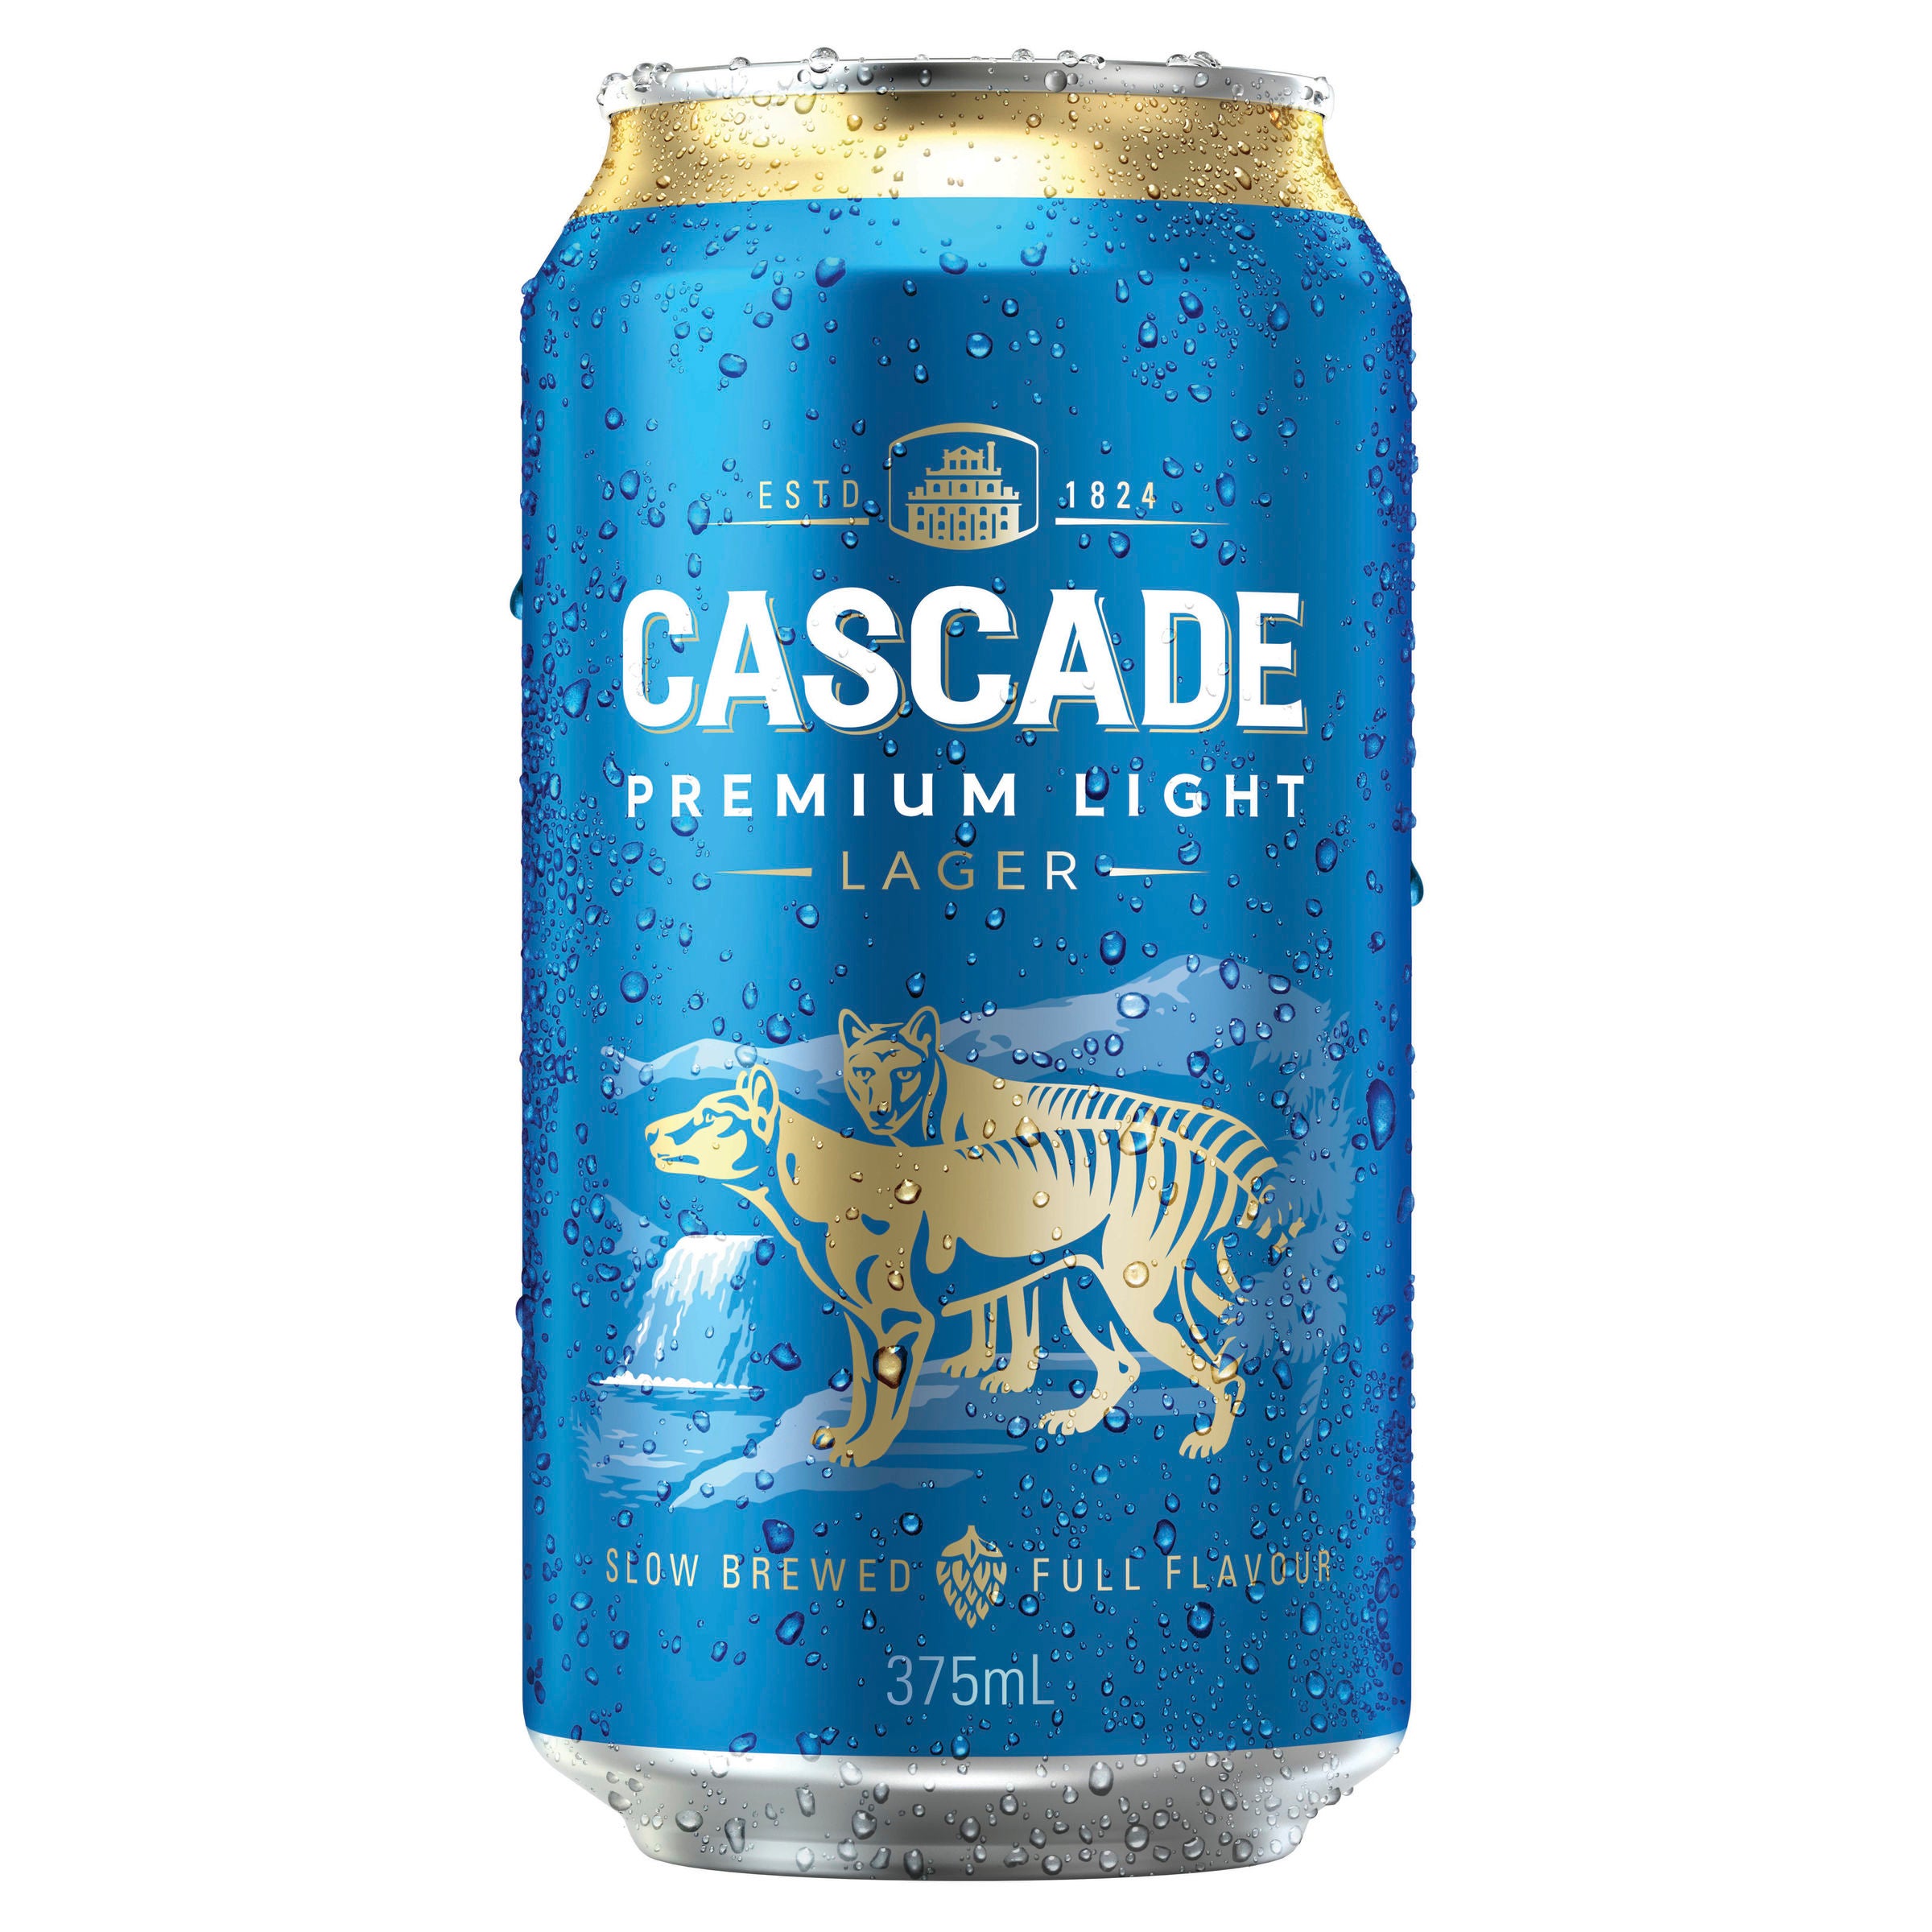 Cascade Premium Light Beer Case 24 x 375mL Cans 2.4%